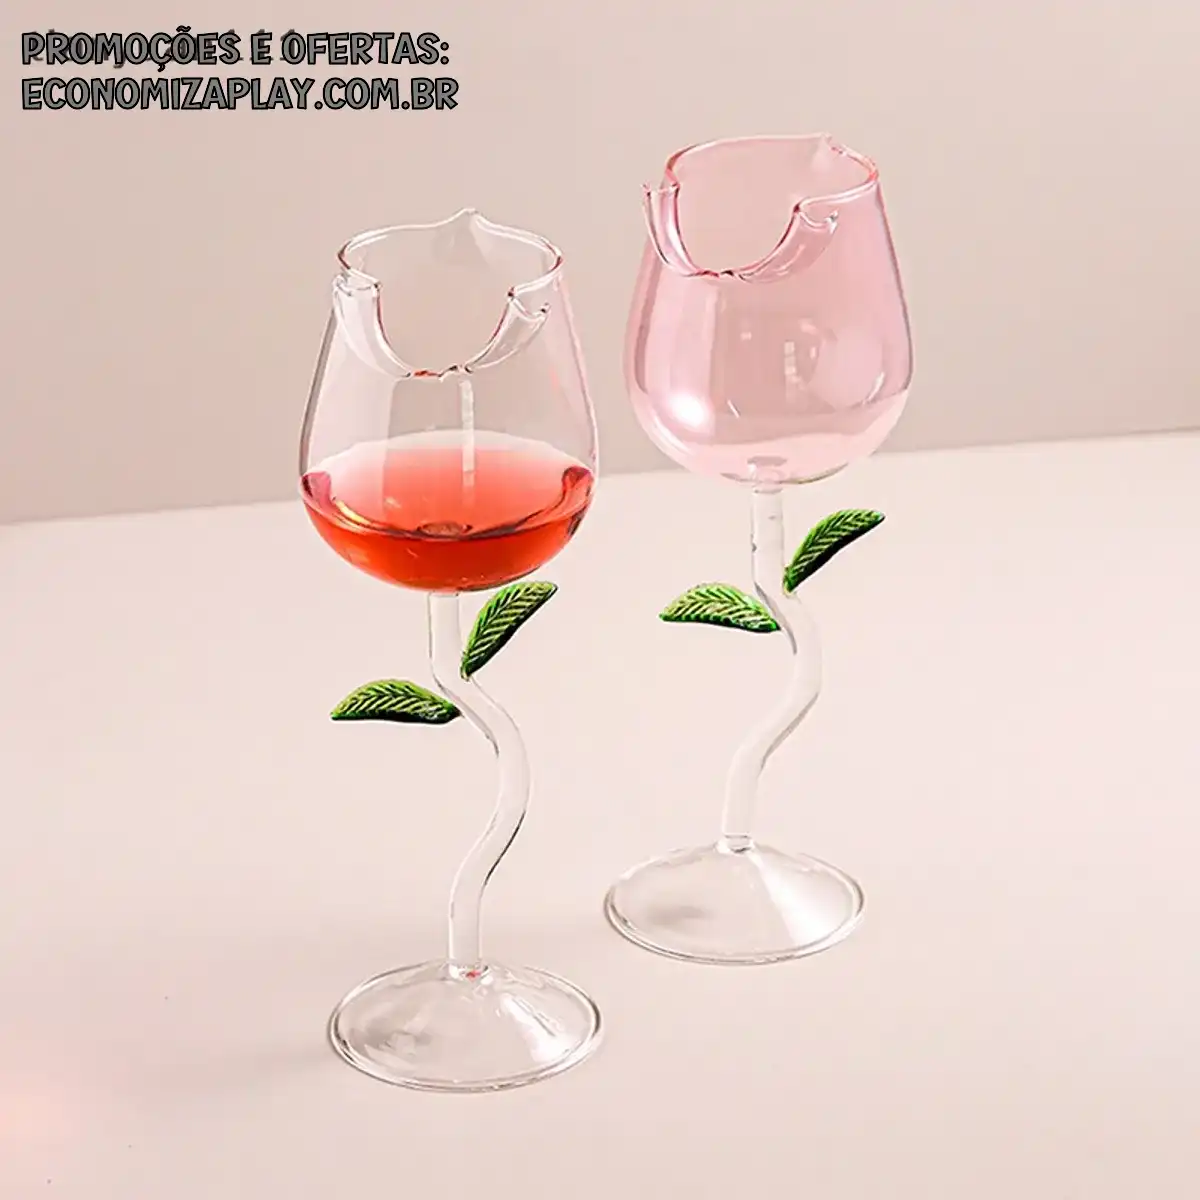 tianyuan111 Rose Wine Glass Romântico Cocktail De Vinho Tinto Taça De 150400ml Flower Shaped Juice Champagne Cup Bar Decoração De Casamento Poço